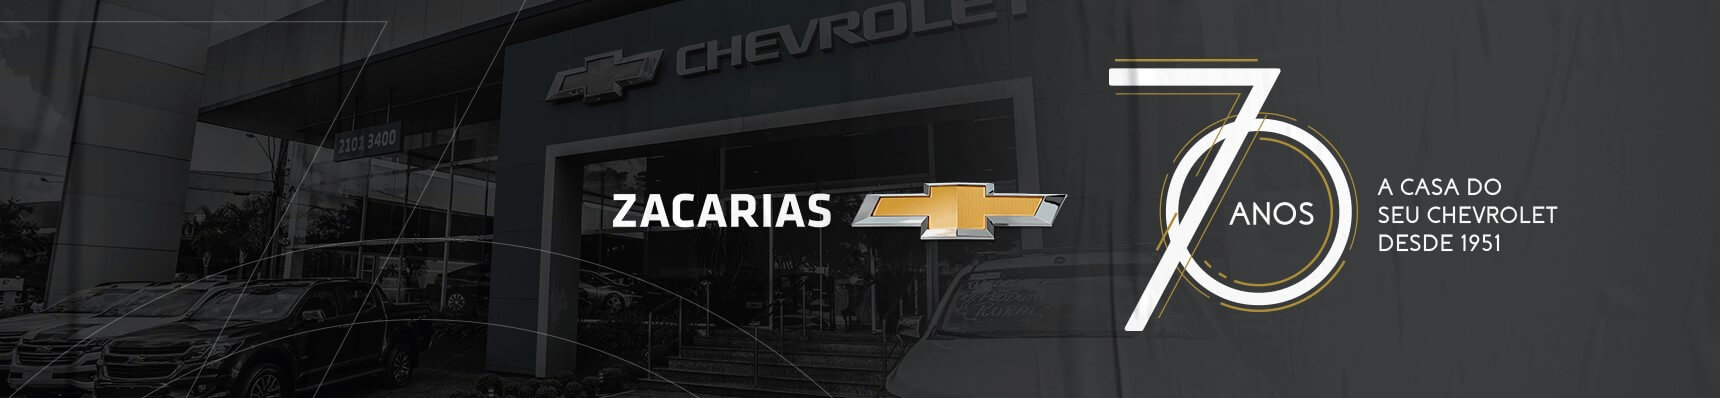 Venda e ofertas de carros novos e seminovos na concessionária Chevrolet Zacarias de Campo Mourão. Peças genuínas GM, acessórios automotivos originais e serviços de manutenção e revisão de veículos.